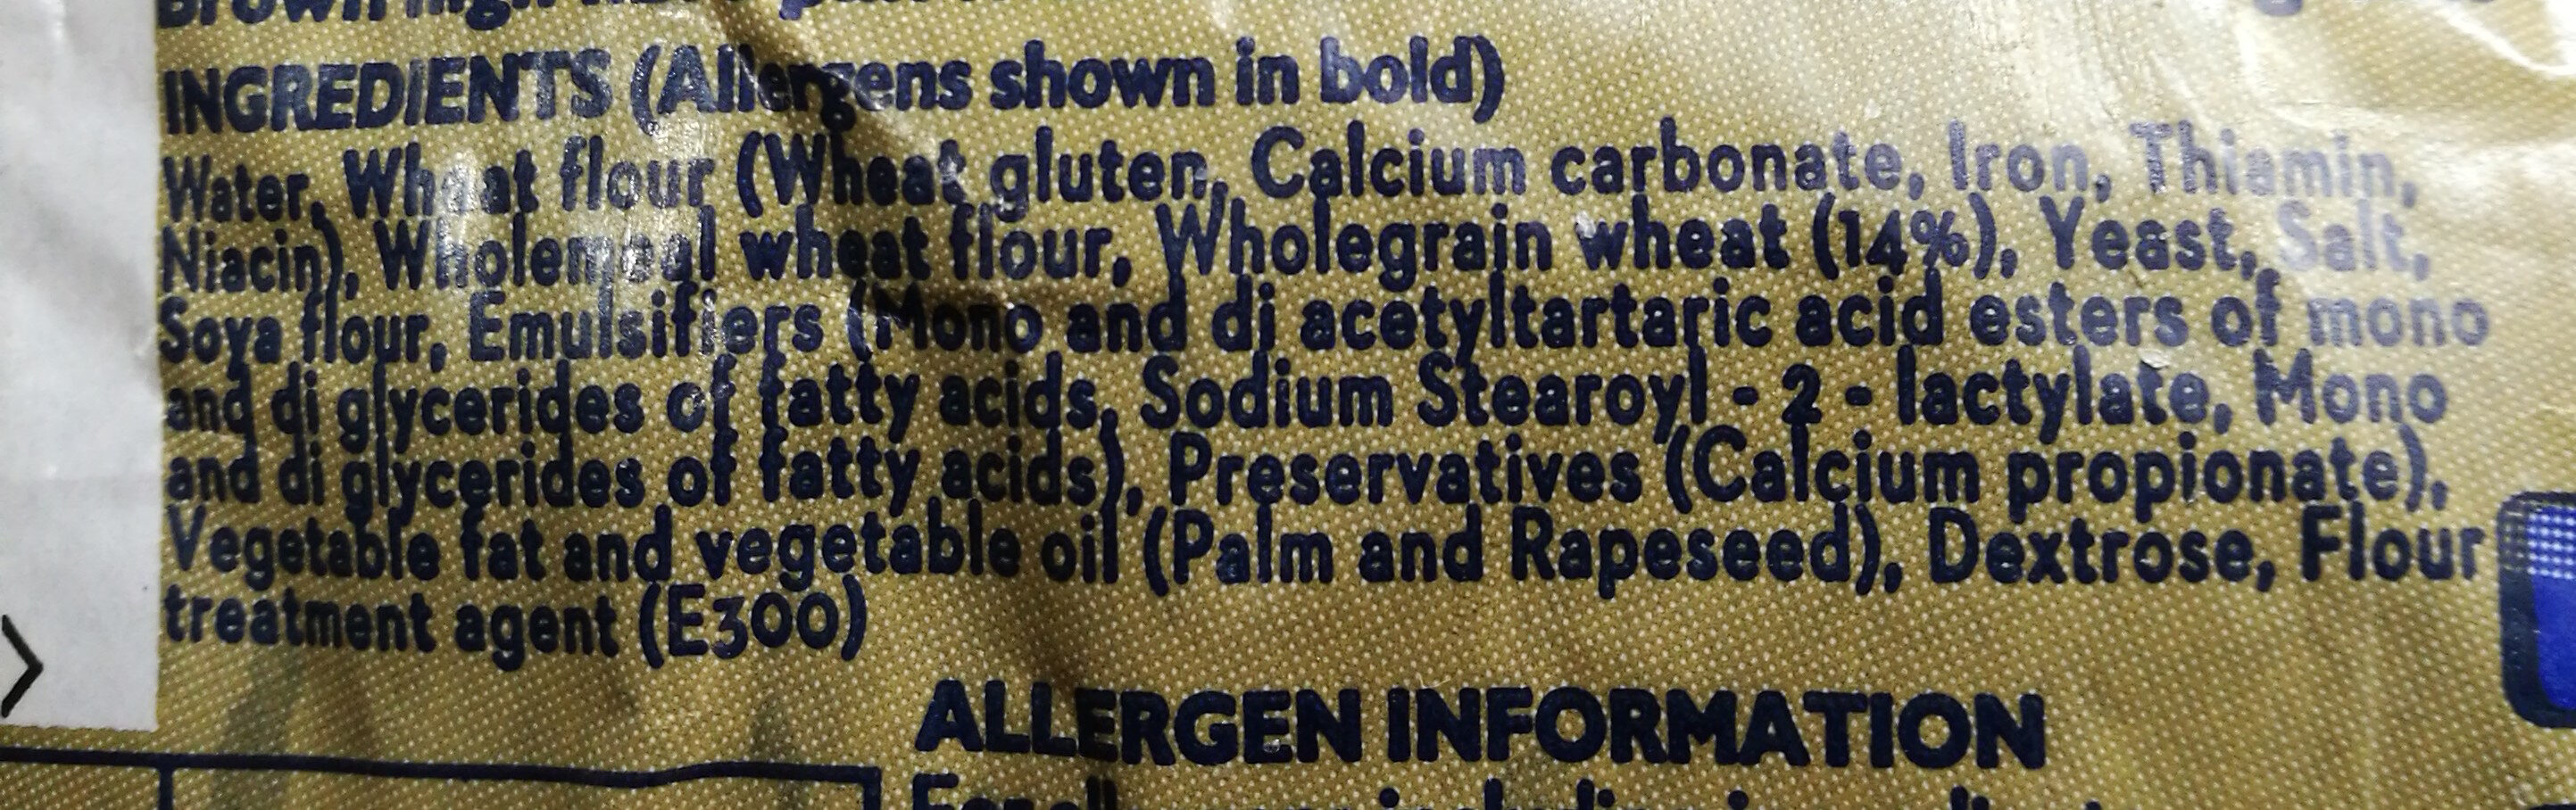 Golden Range Wholegrain - Ingredients - fr